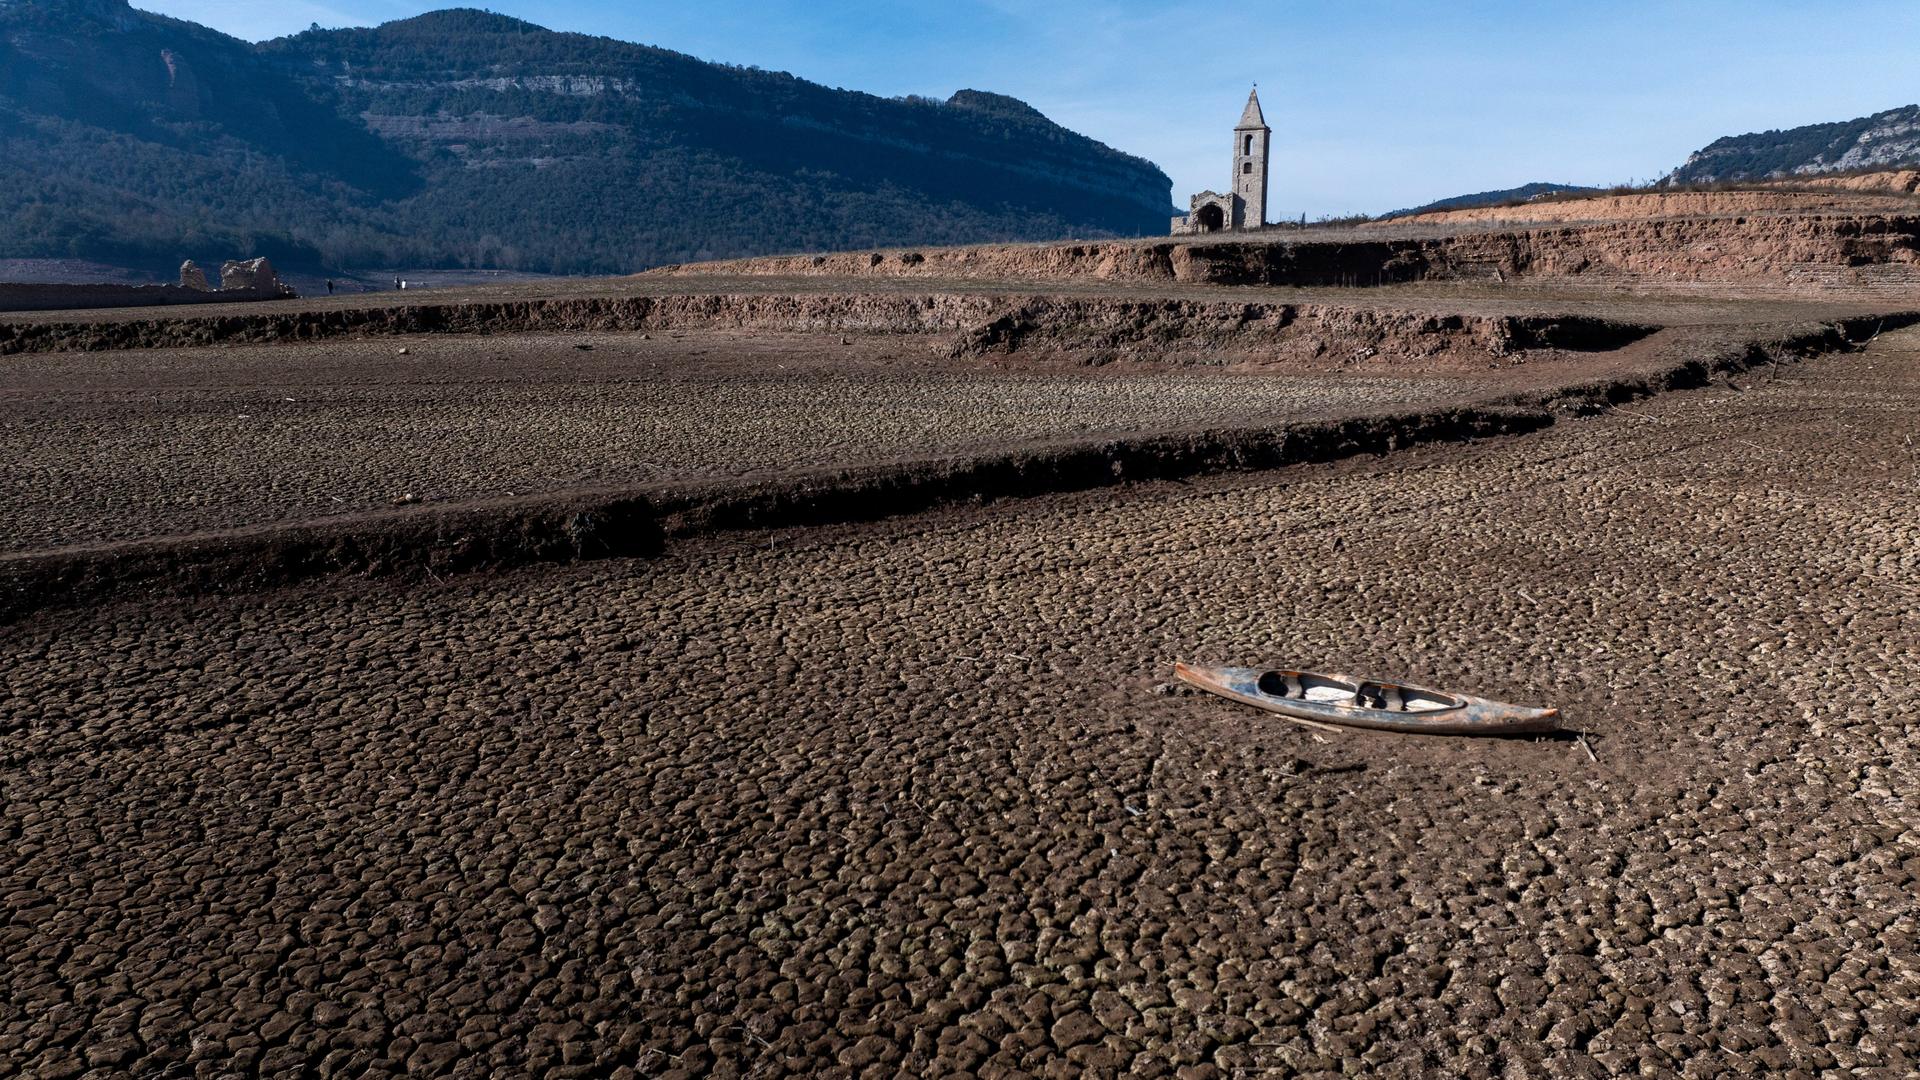 Spanien, Vilanova de Sau: Ein verlassenes Kanu liegt auf dem rissigen Boden des Sau-Stausees etwa 100 Kilometer nördlich von Barcelona. Die nordöstliche Region in Katalonien ist schwer von der Trockenheit betroffen.